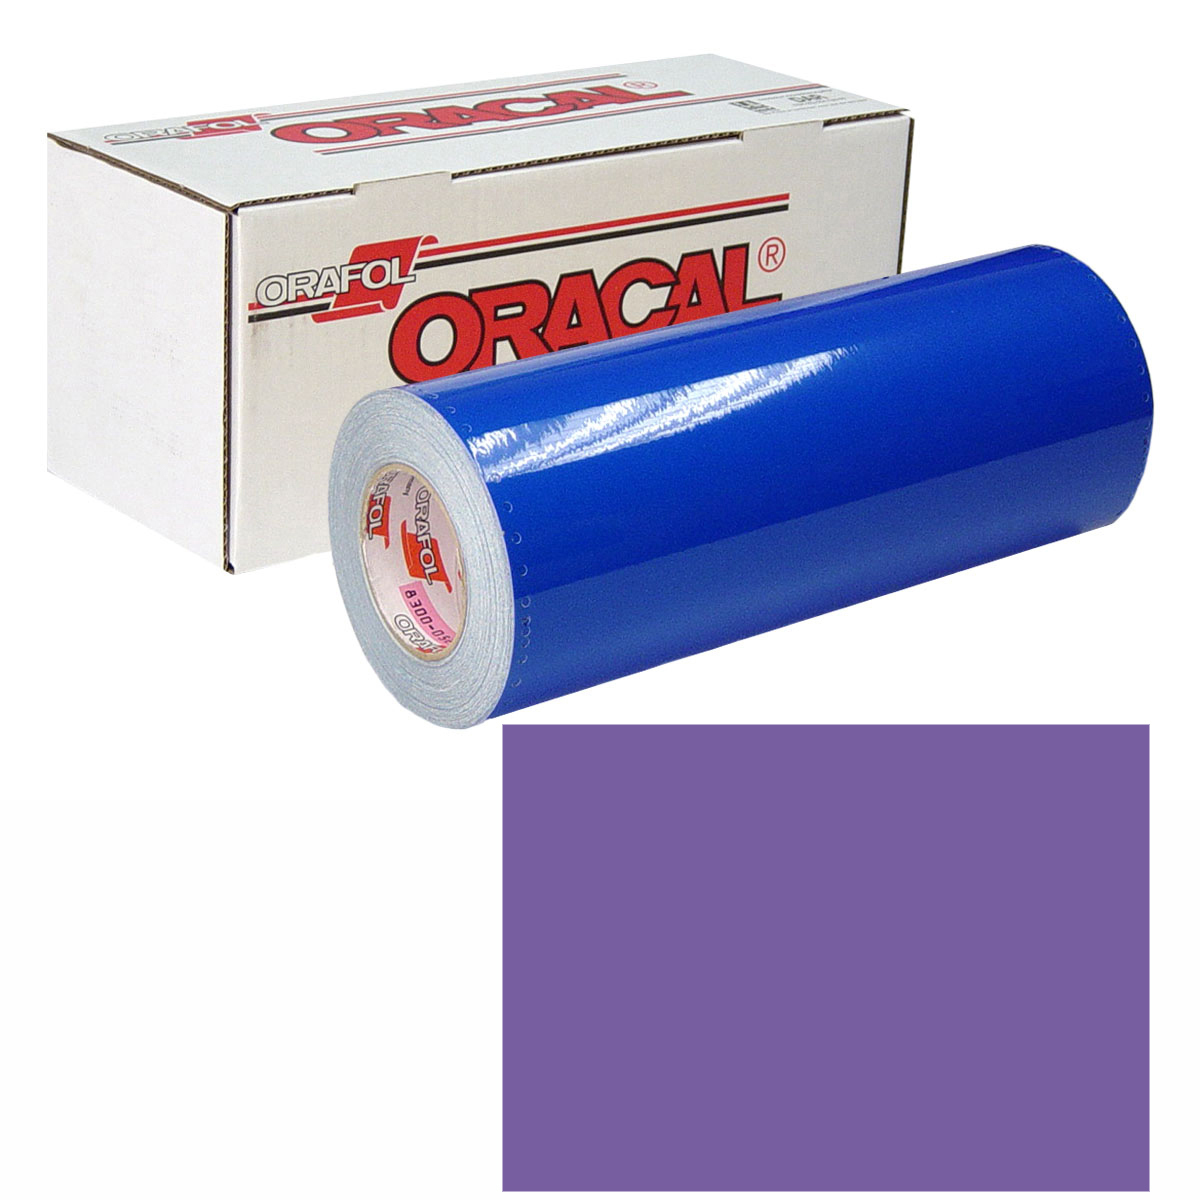 ORACAL 631 Unp 48in X 50yd 043 Lavender